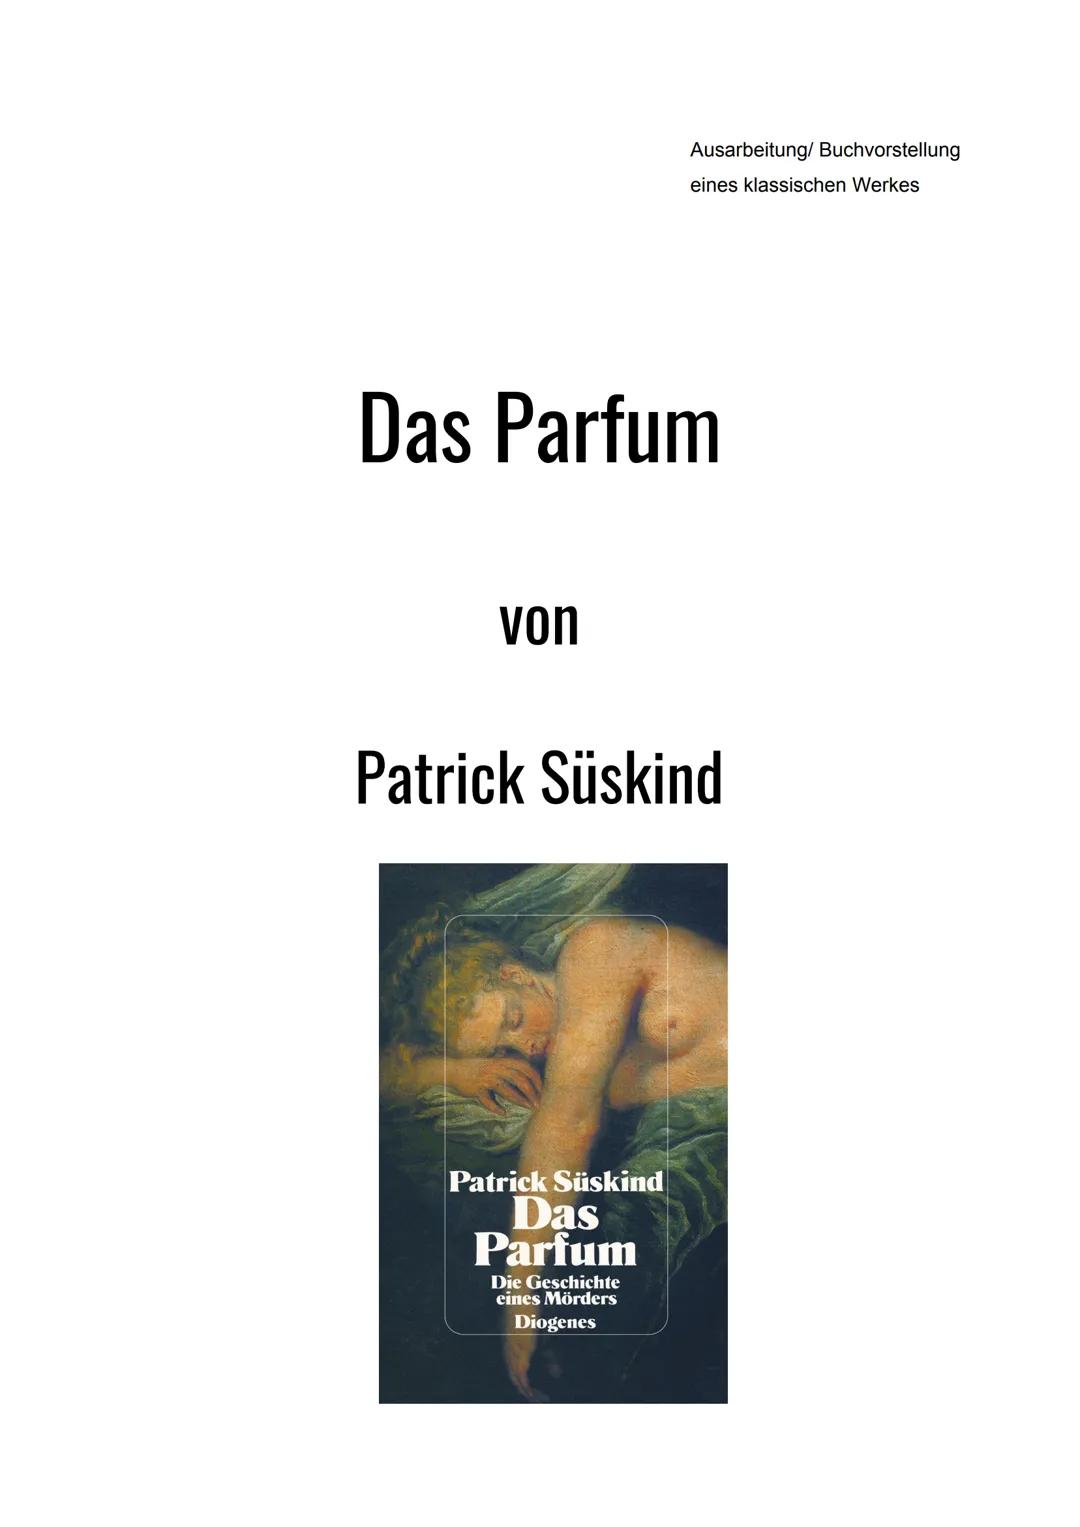 Das Parfum
von
Ausarbeitung/ Buchvorstellung
eines klassischen Werkes
Patrick Süskind
Patrick Süskind
Das
Parfum
Die Geschichte
eines Mörder